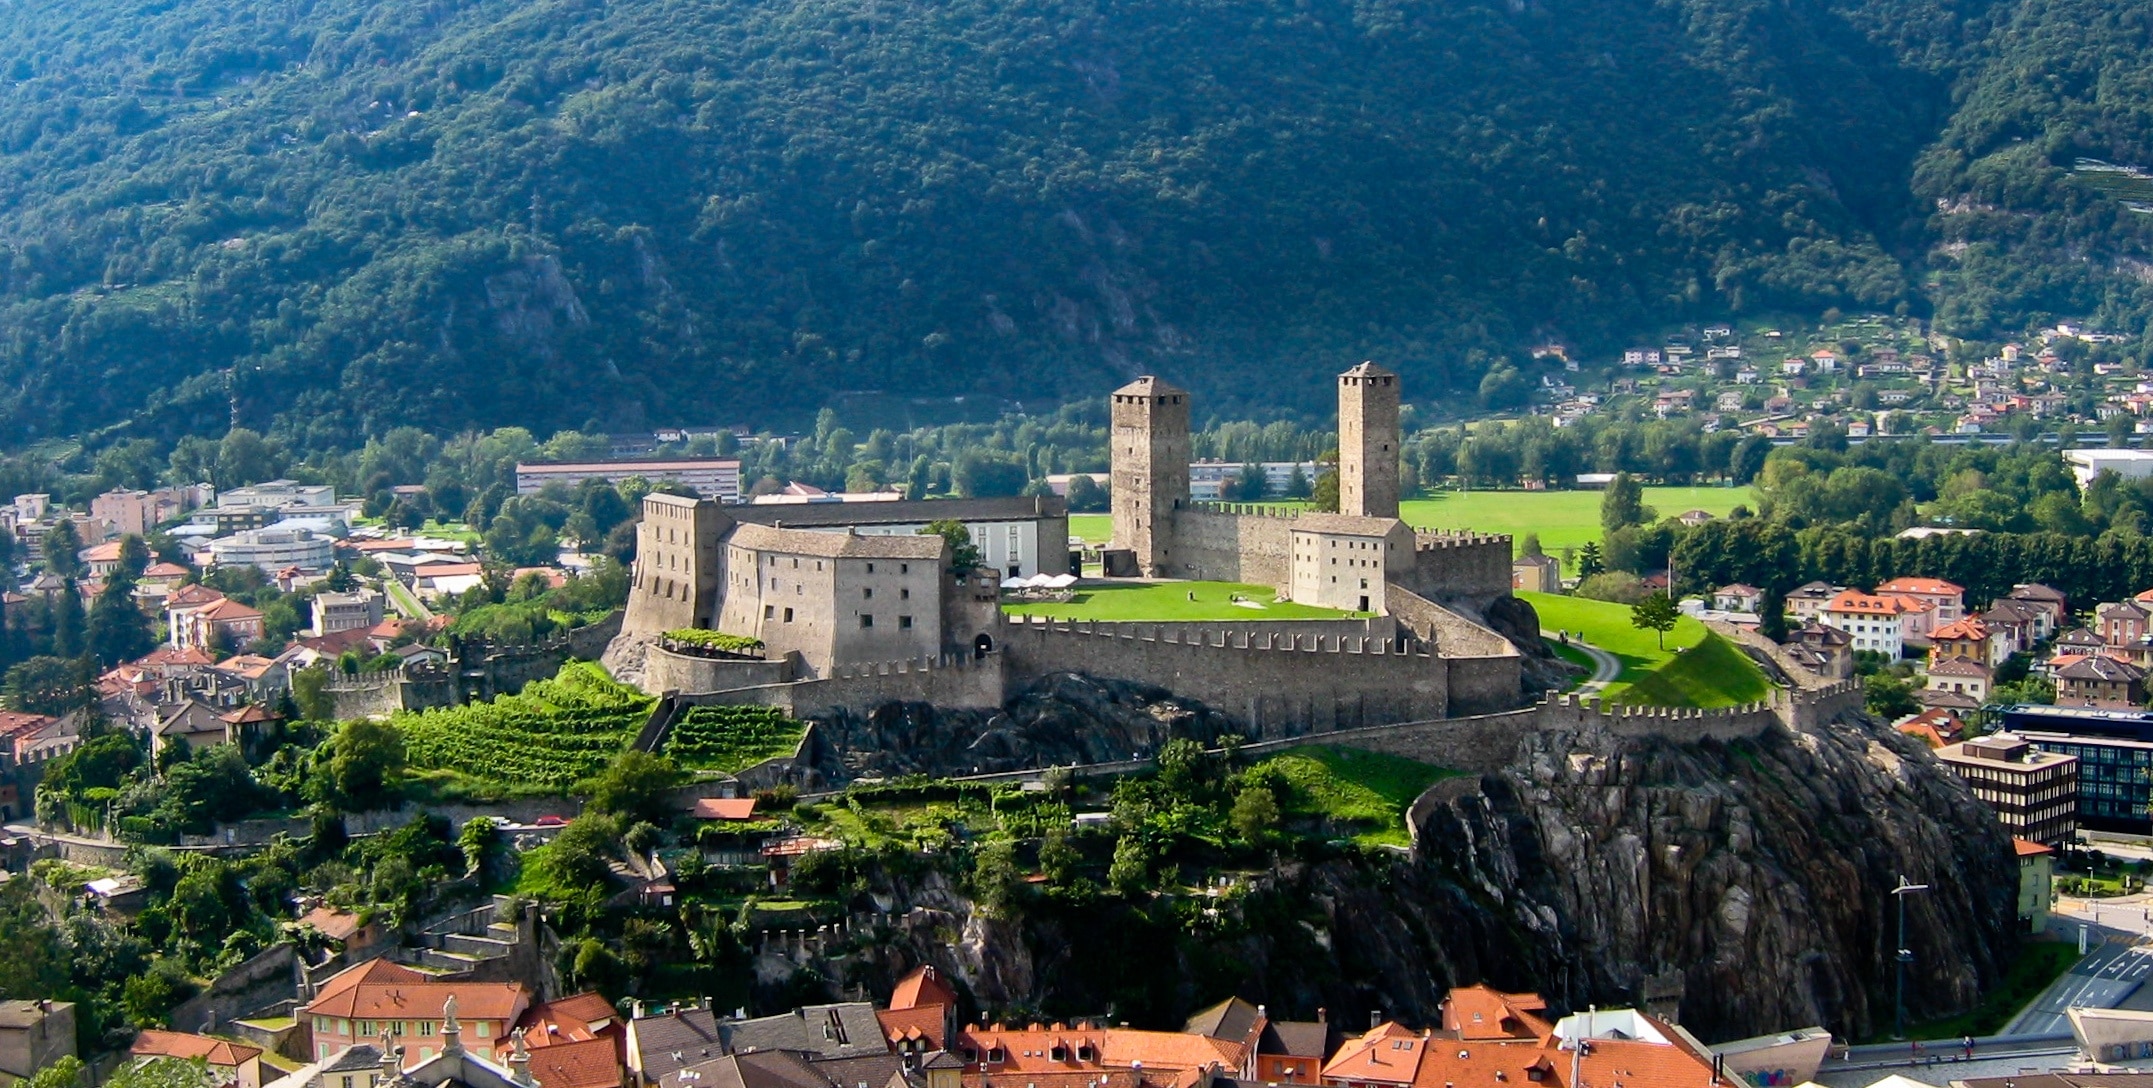 View of Bellinzona's Castelgrande as seen from Castello di Montebello.